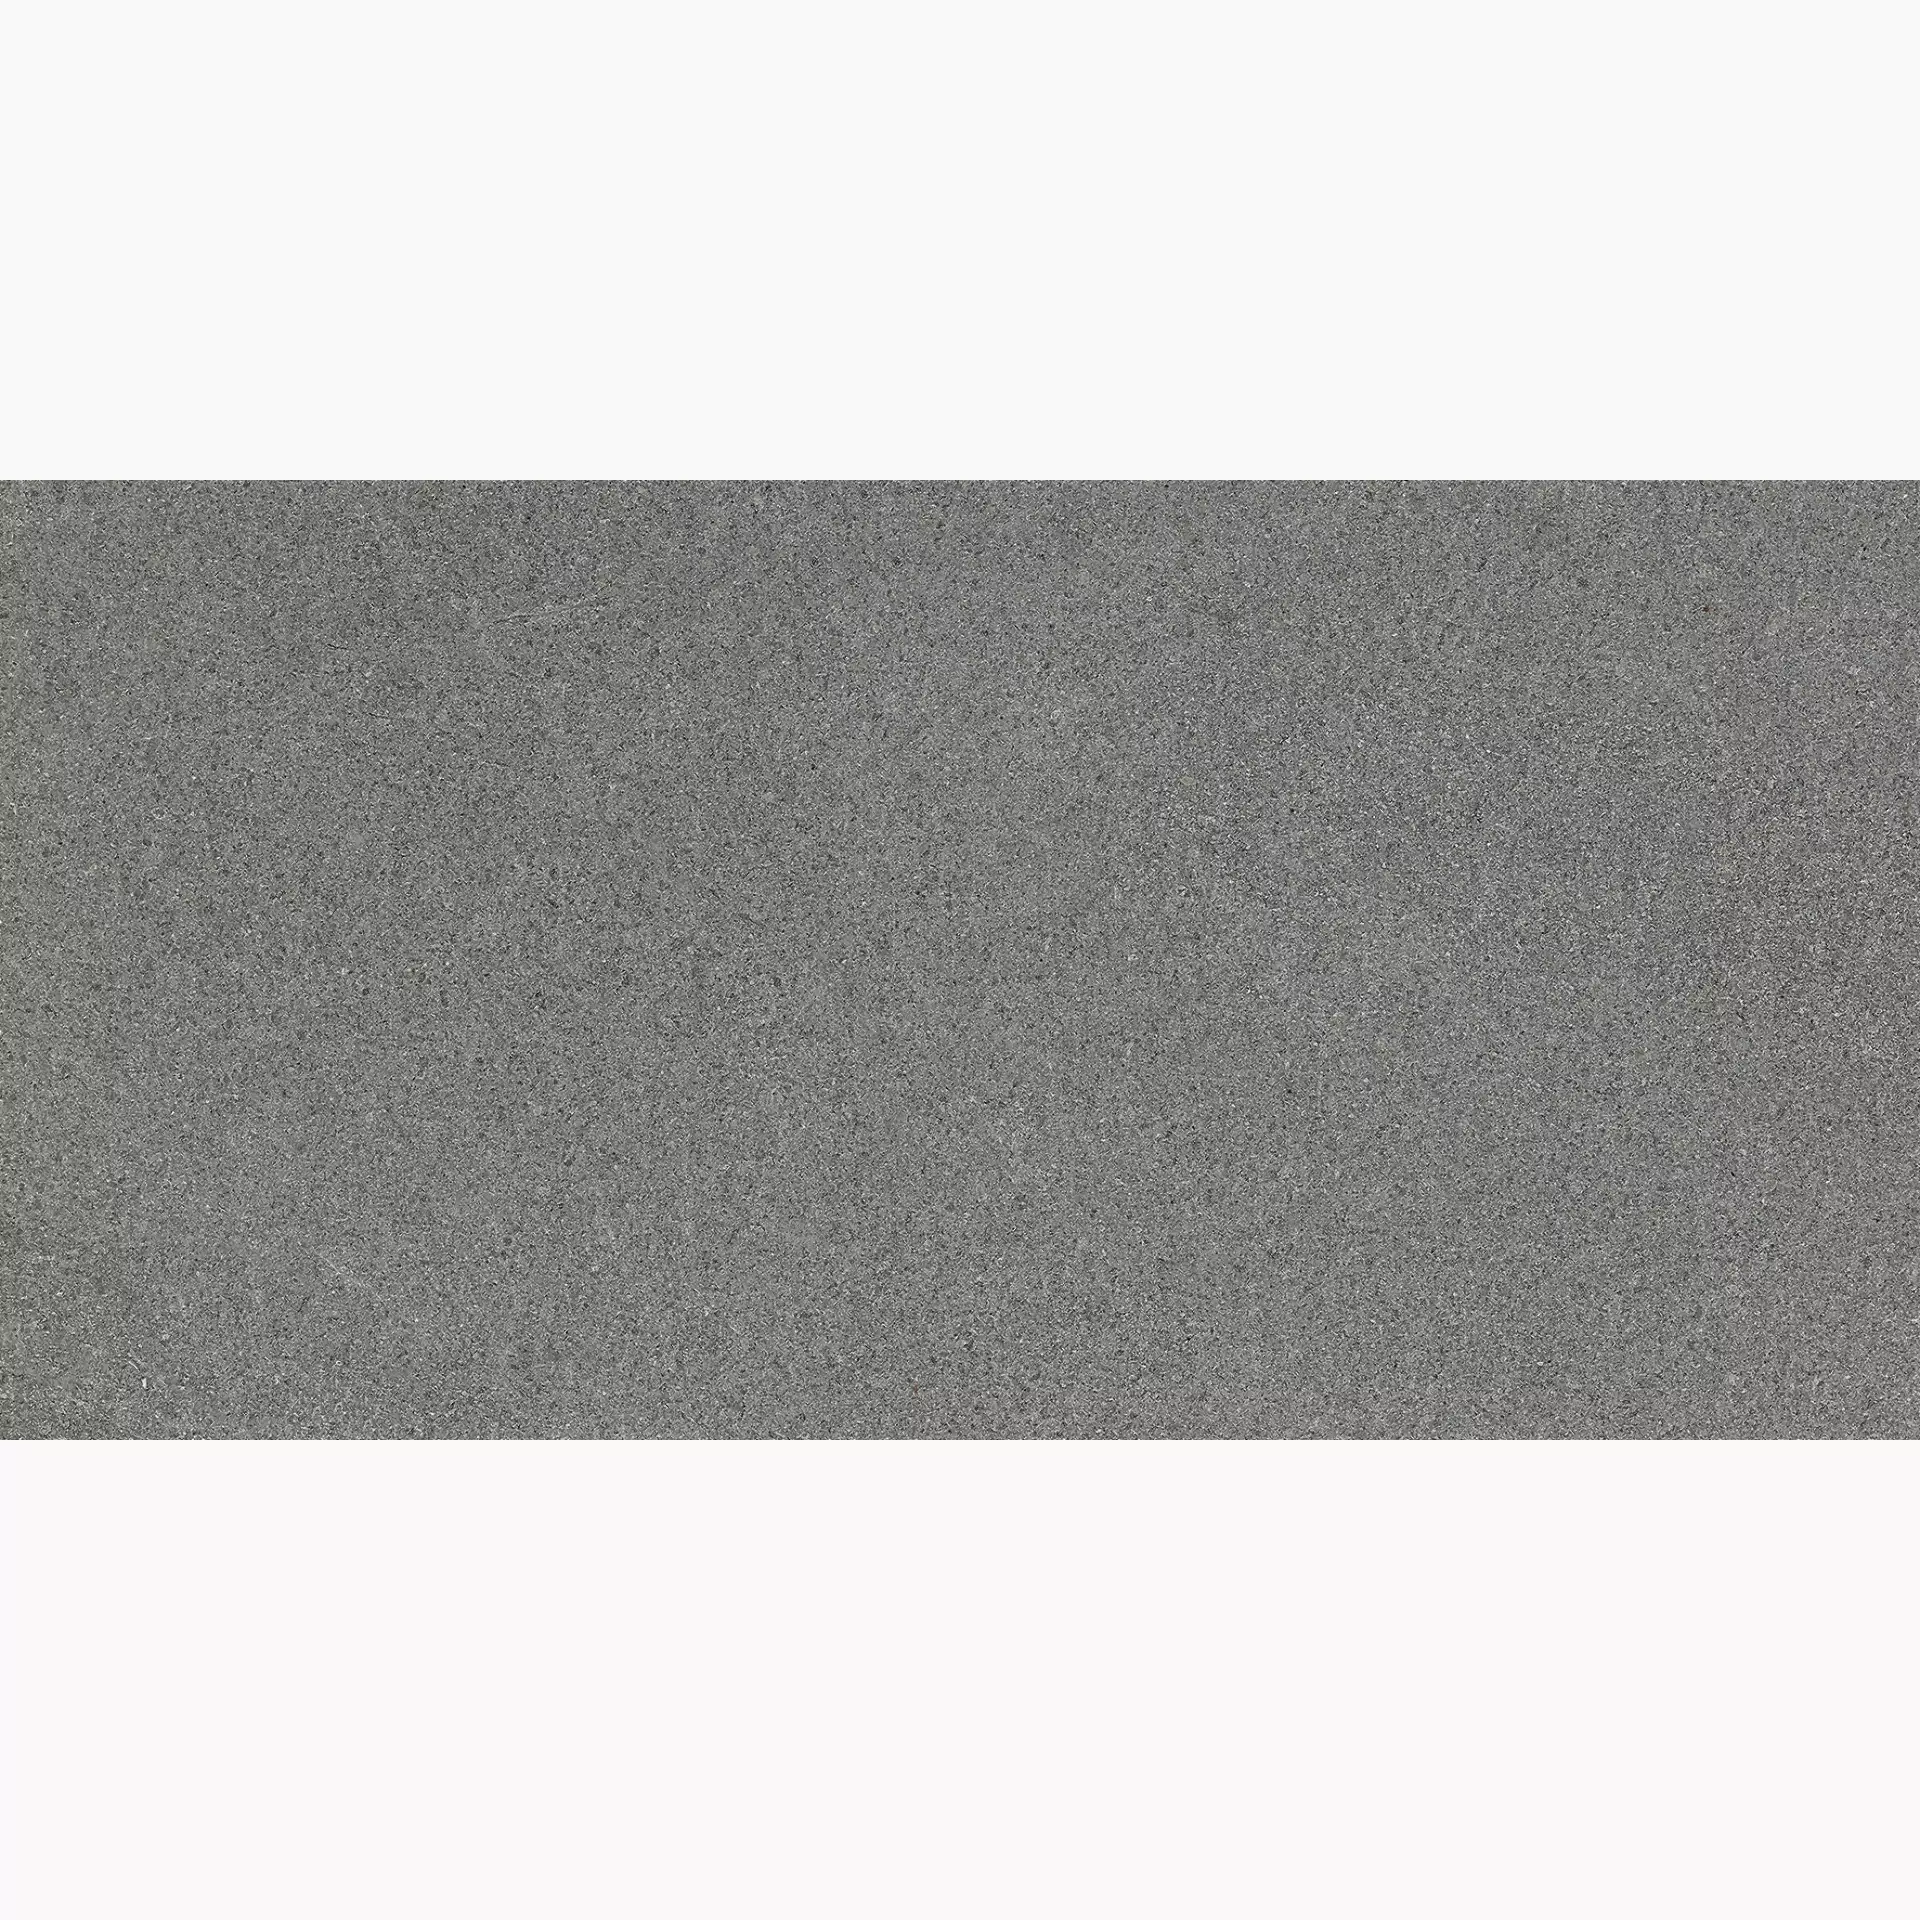 Florim Airtech New York Light Grey Naturale – Matt 760258 40x80cm rectified 9mm